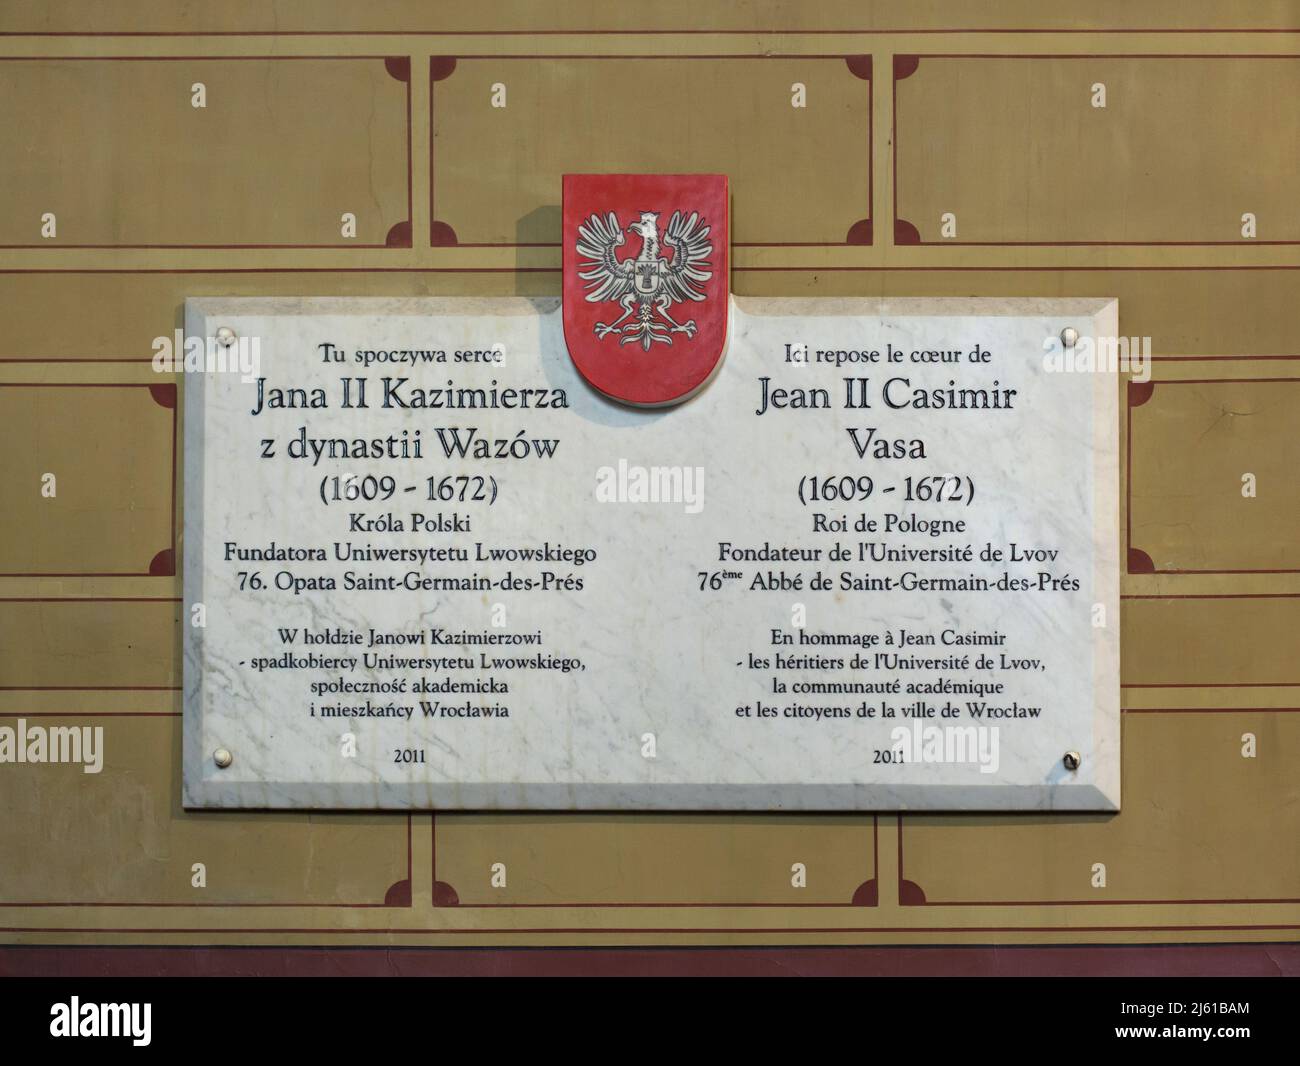 Placa conmemorativa dedicada al rey Juan II Casimir Vasa de Polonia en la Iglesia de Saint-Germain-des-Prés en París, Francia. Después de la abdicación el antiguo rey sirvió como abad de la abadía de Saint-Germain-des-Prés y su corazón está enterrado en esta iglesia. Foto de stock